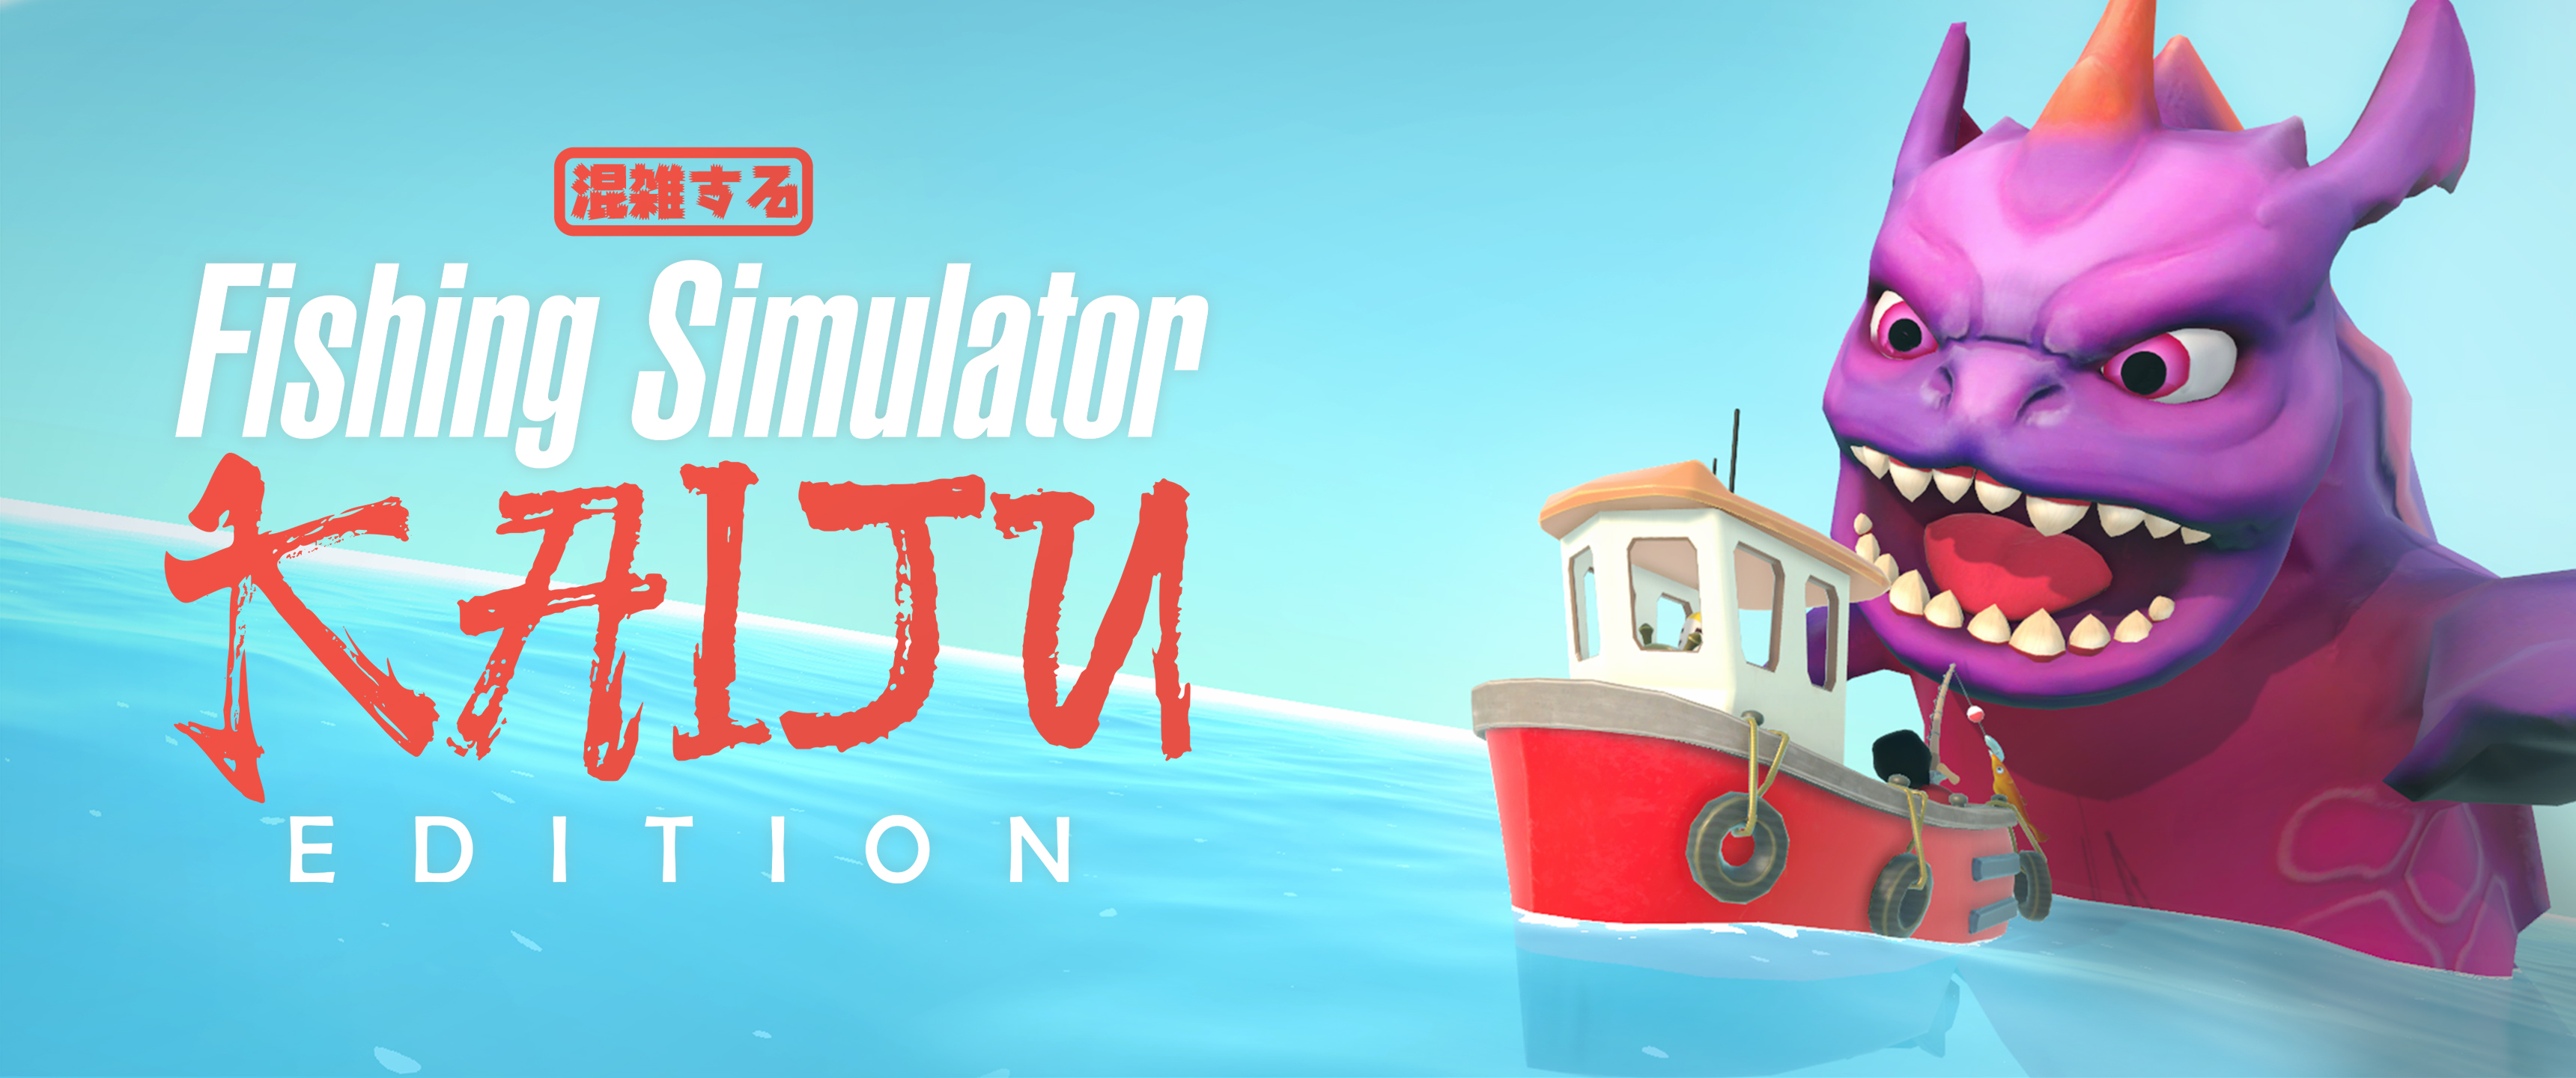 Fishing Simulator Kaiju Edition